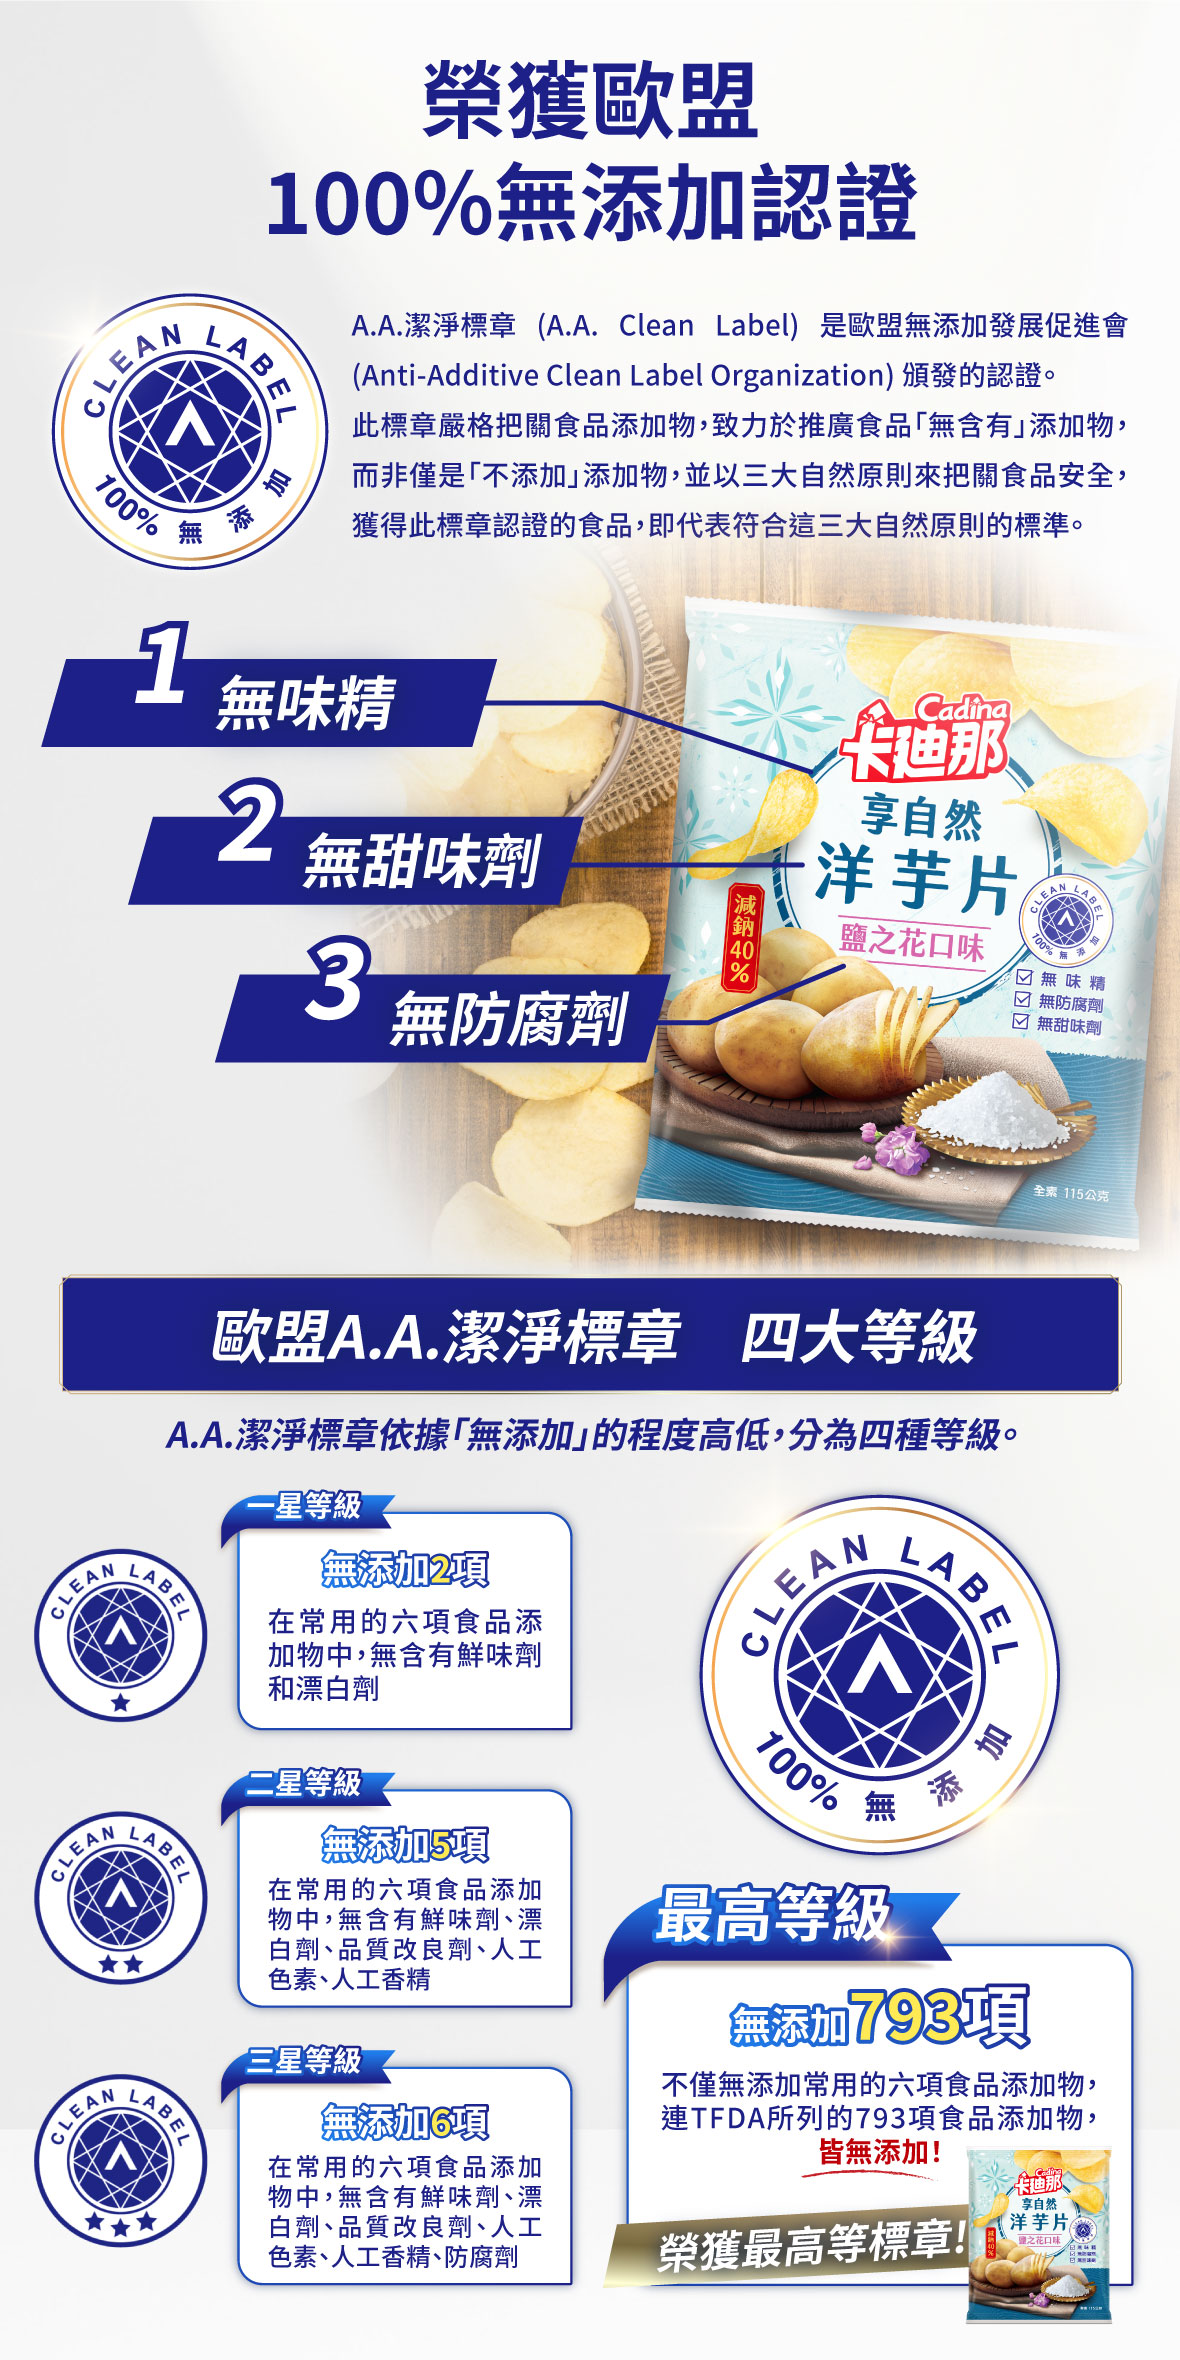 AA潔淨標章 卡迪那 享自然 洋芋片 無添加 歐盟認證 無味精 無甜味劑 無防腐劑 台灣首位 AA標章 零食